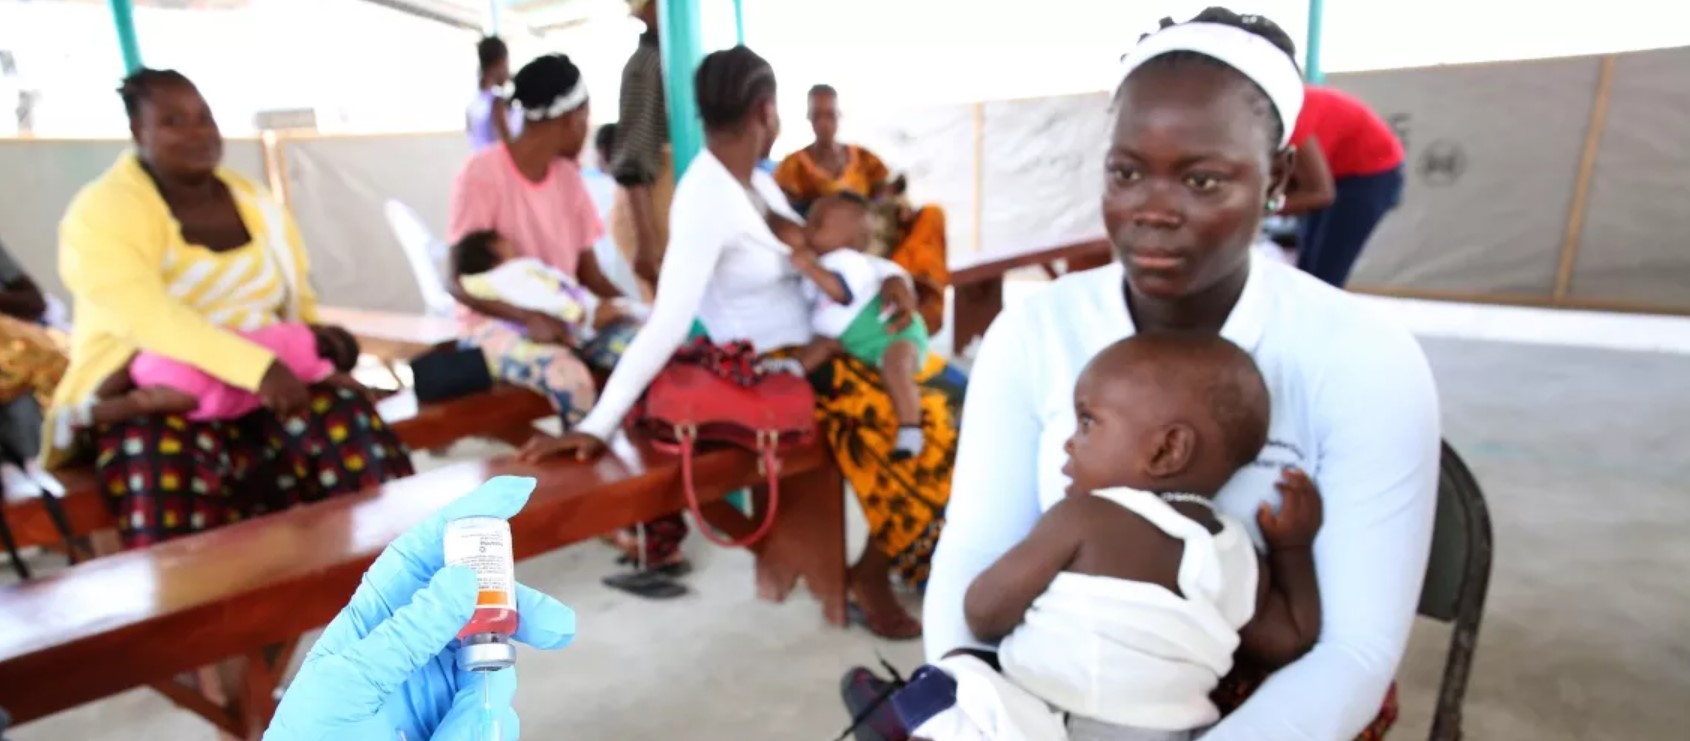 Cómo financiar “La gran puesta al día”, que permitirá proteger a más niños y comunidades de enfermedades prevenibles mediante vacunación.